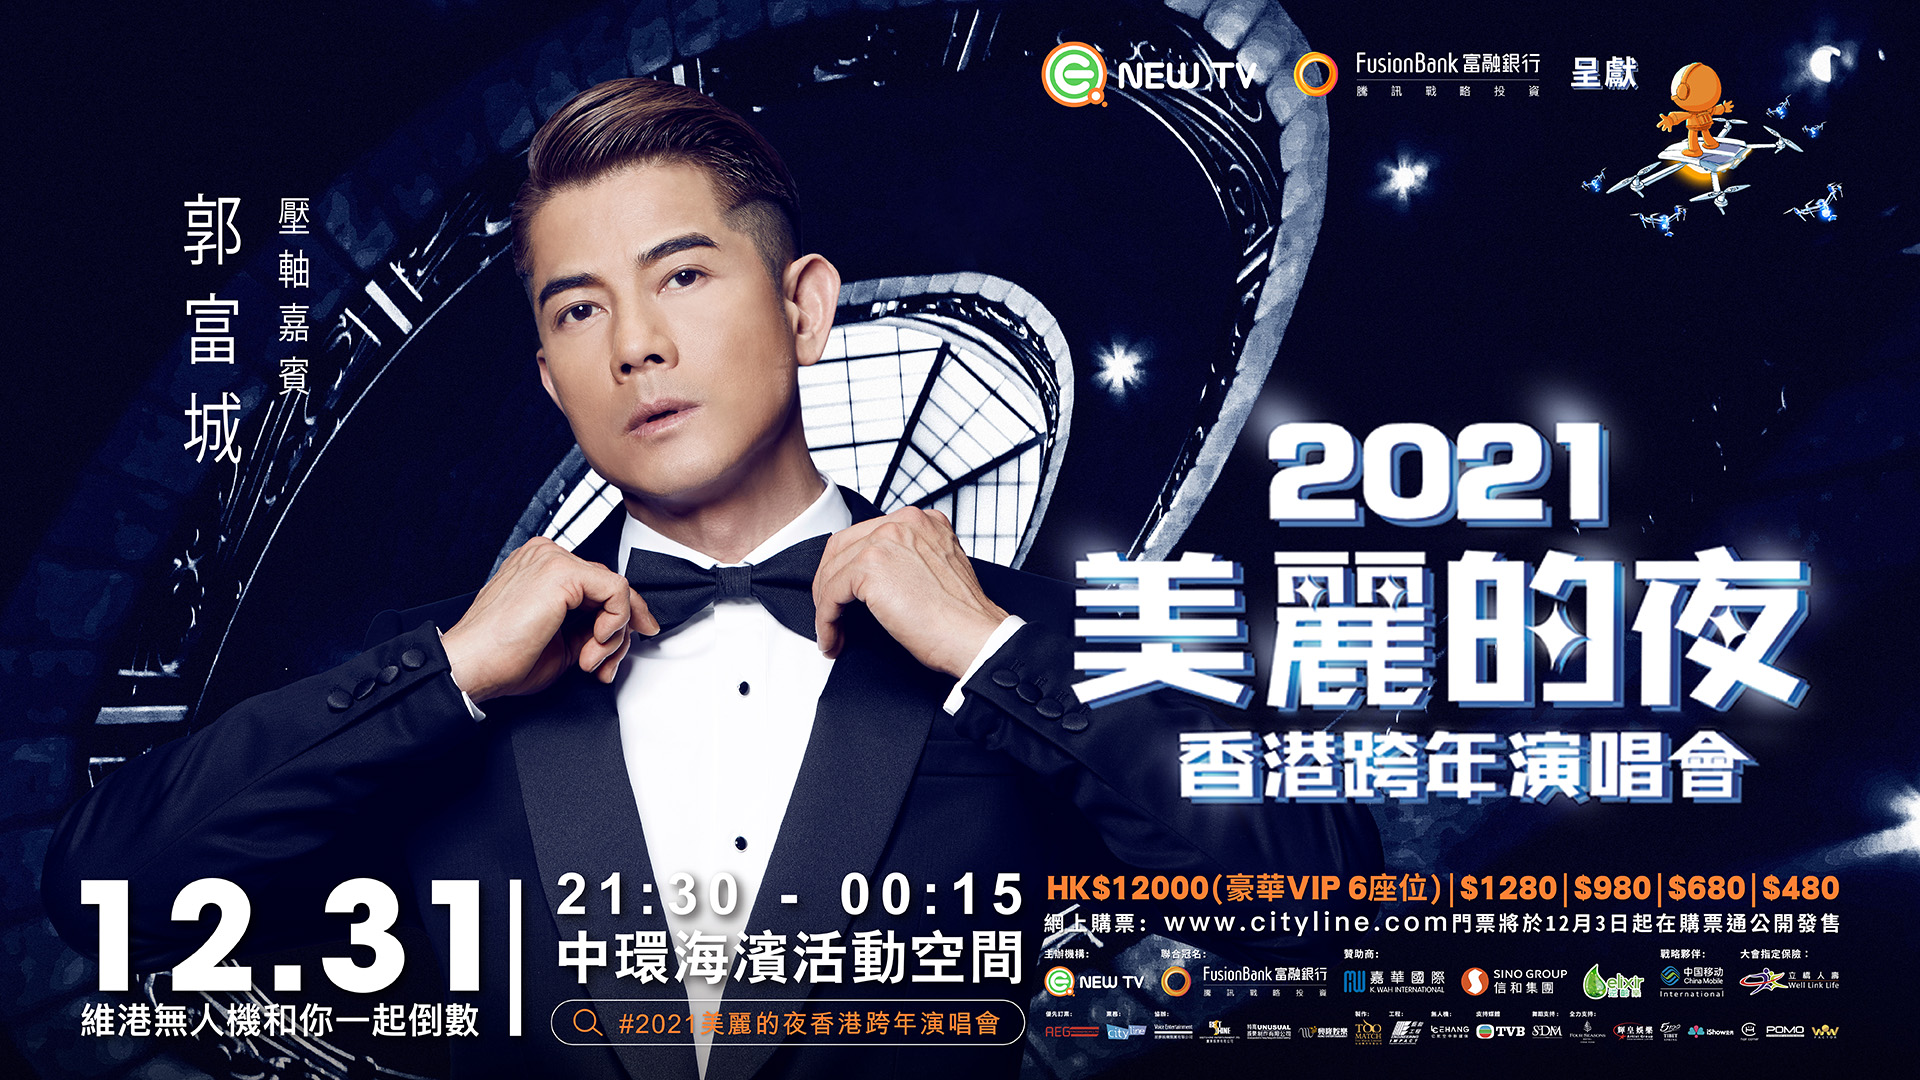 【娛樂】美麗的夜香港跨年演唱會 郭富城壓軸登場